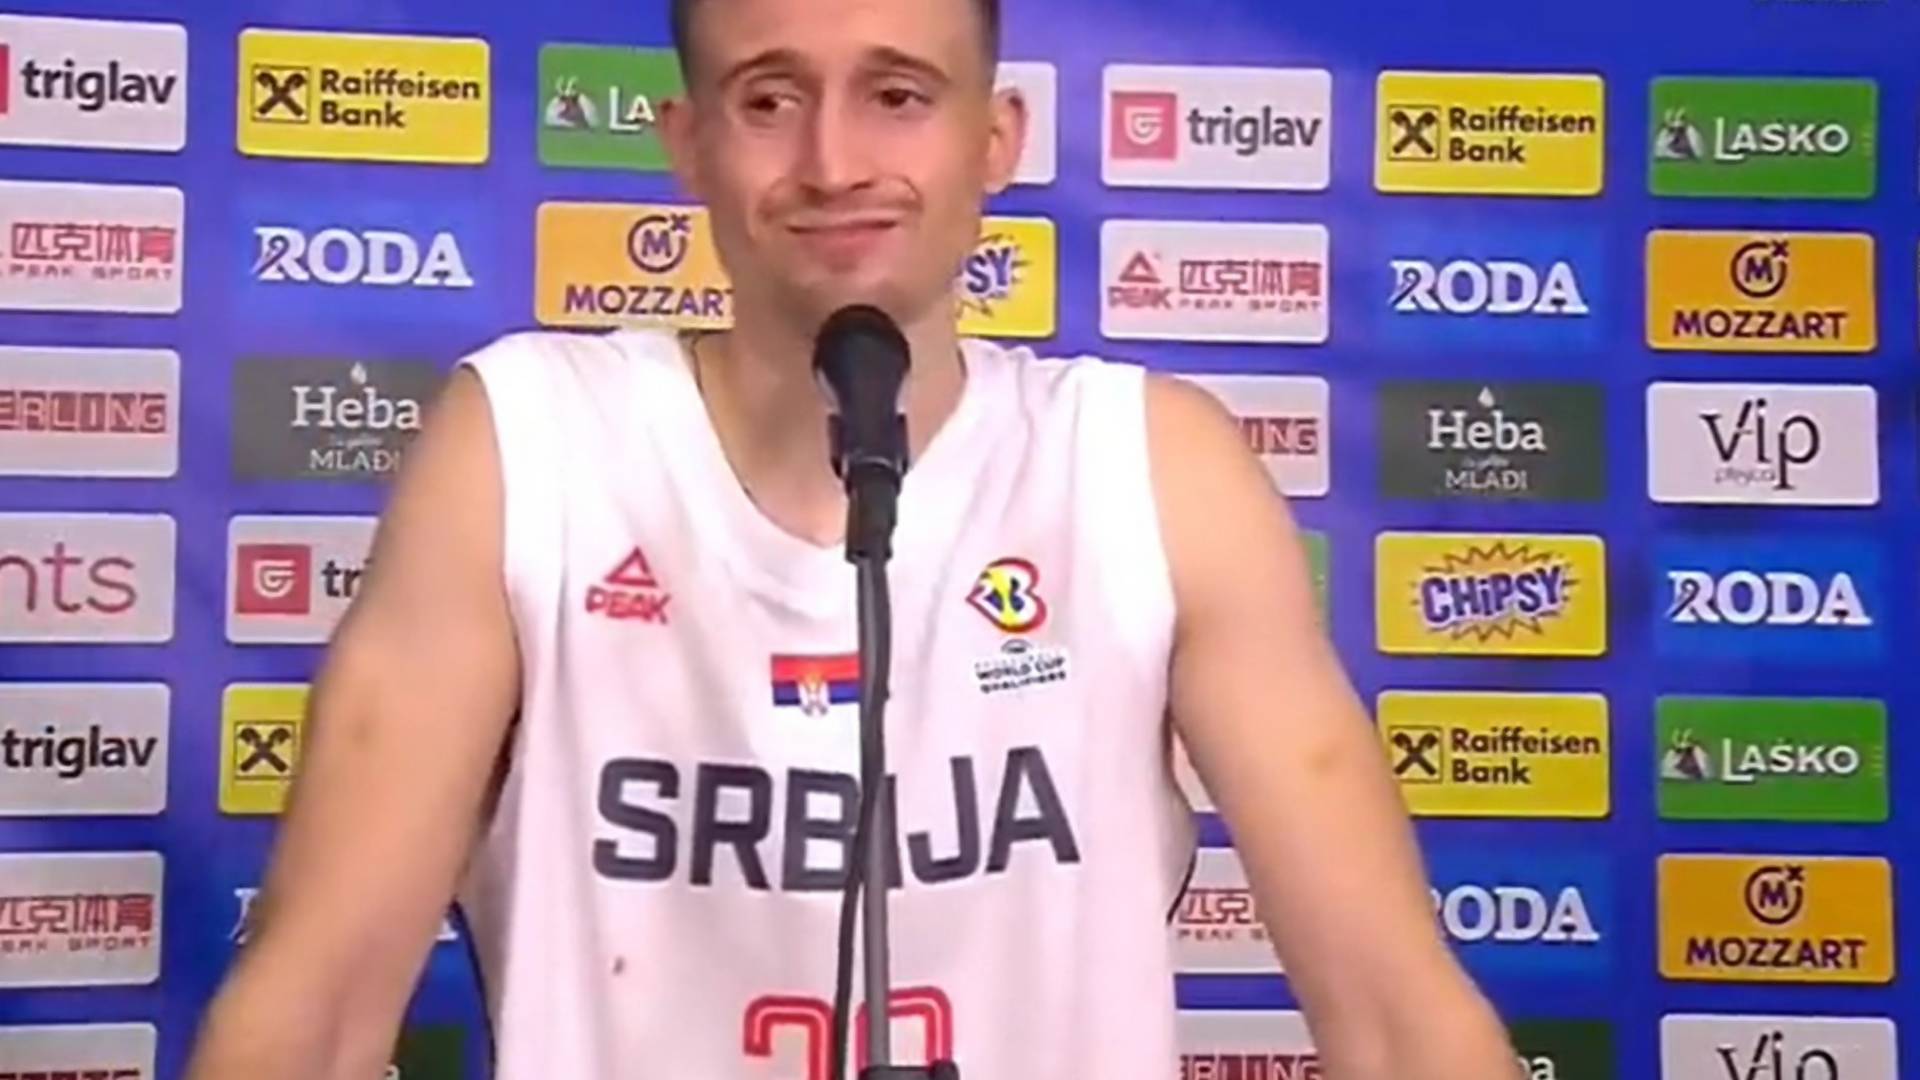 Naš košarkaš posle pobede nad Letonijom ne može da prestane da uzdiše i hukće i ceo internet ga obožava zbog toga